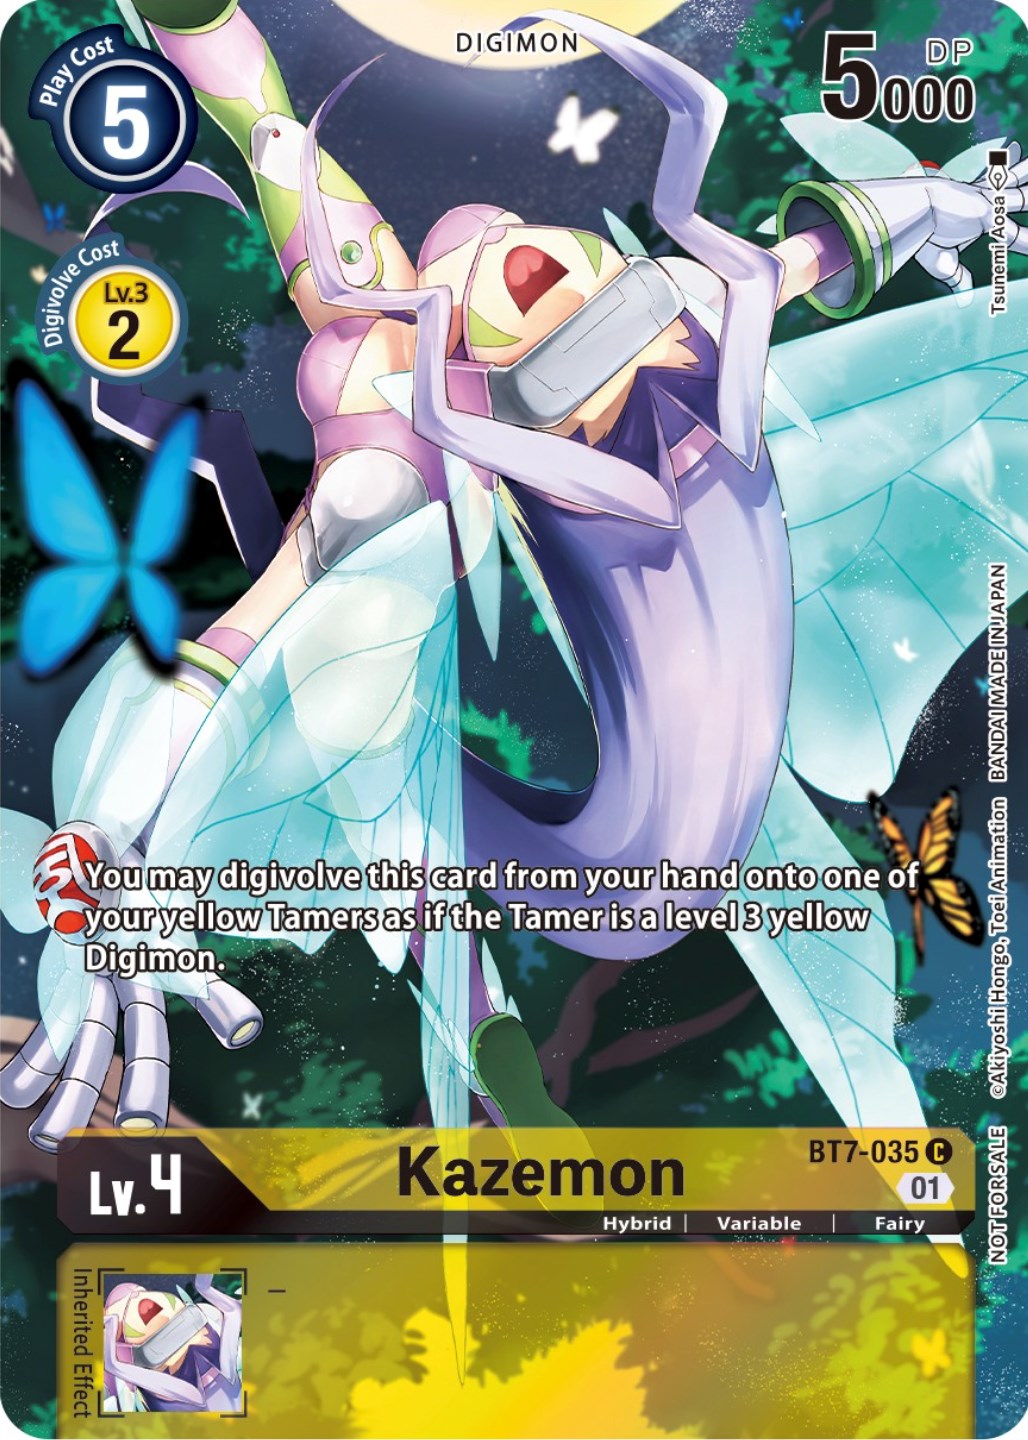 Kazemon [BT7-035] (2nd Anniversary Frontier Card) [Next Adventure Promos] | Shuffle n Cut Hobbies & Games